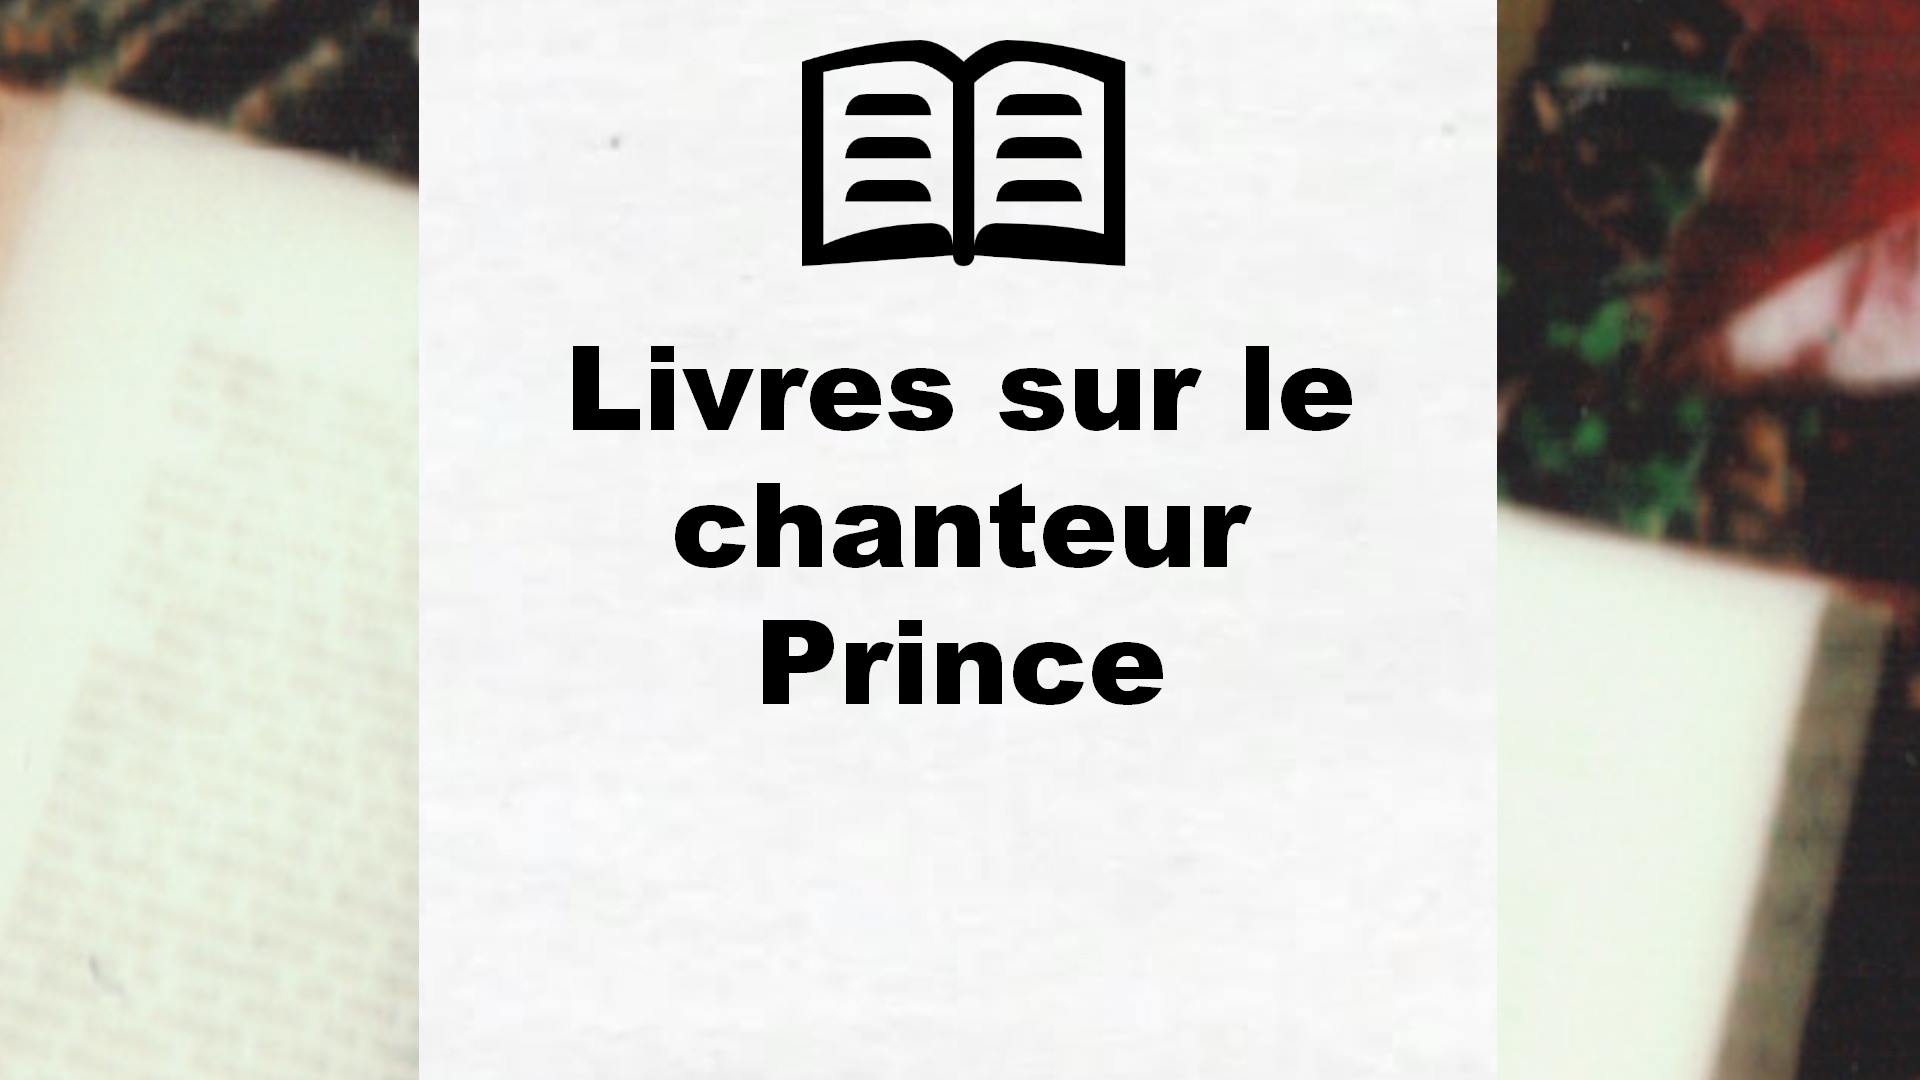 Livres sur le chanteur Prince